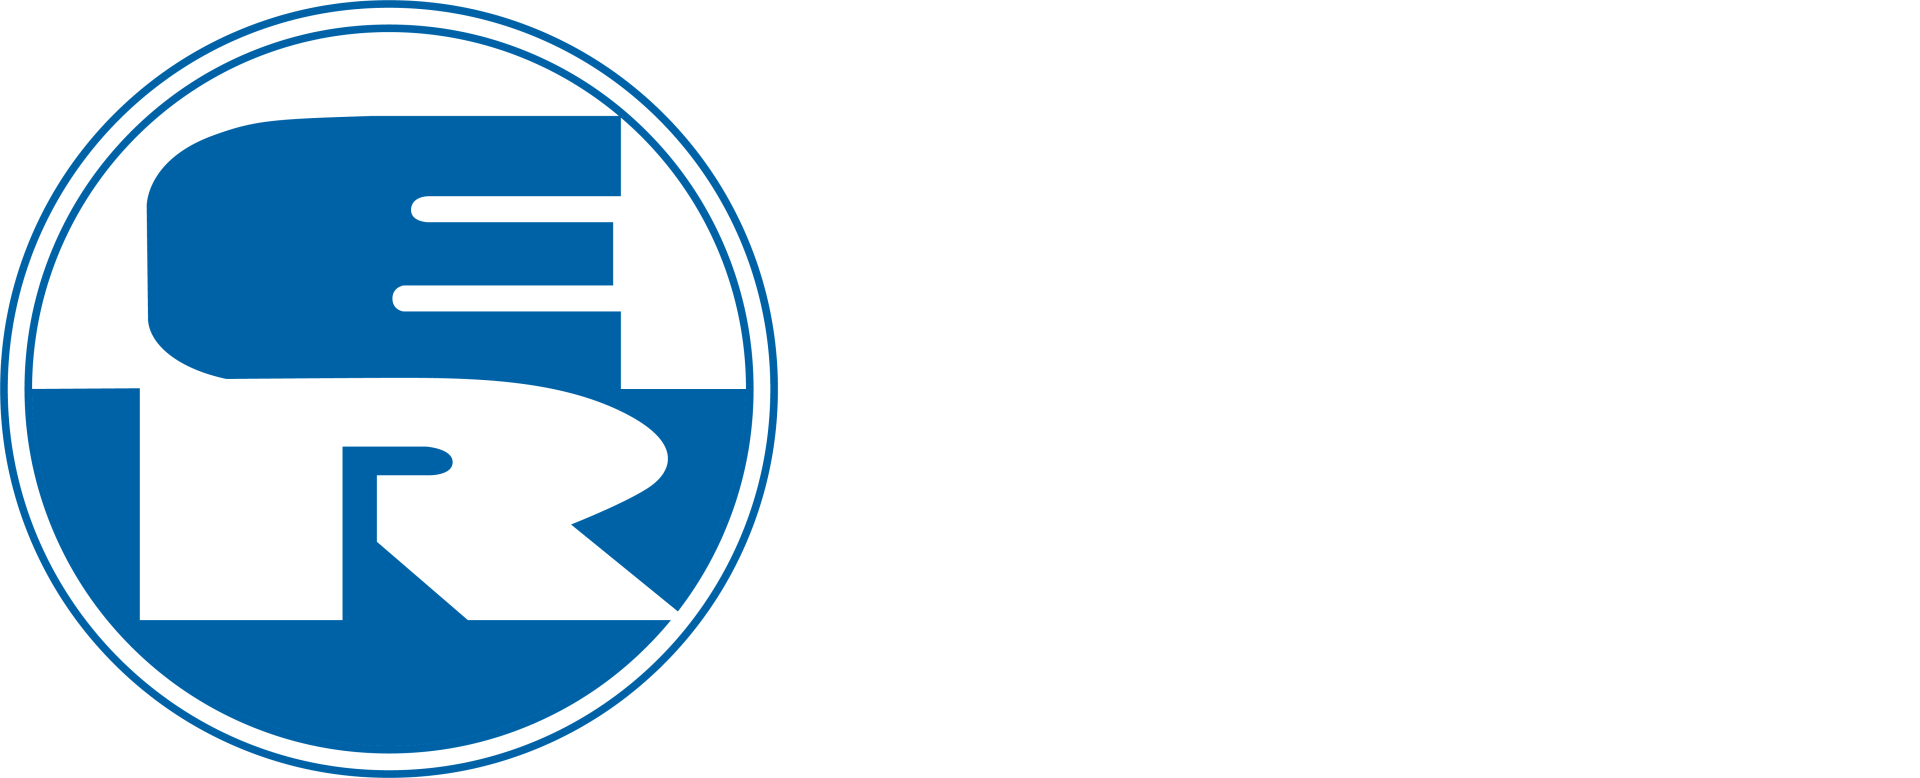 Riedelsberger Baumaschinen Logo